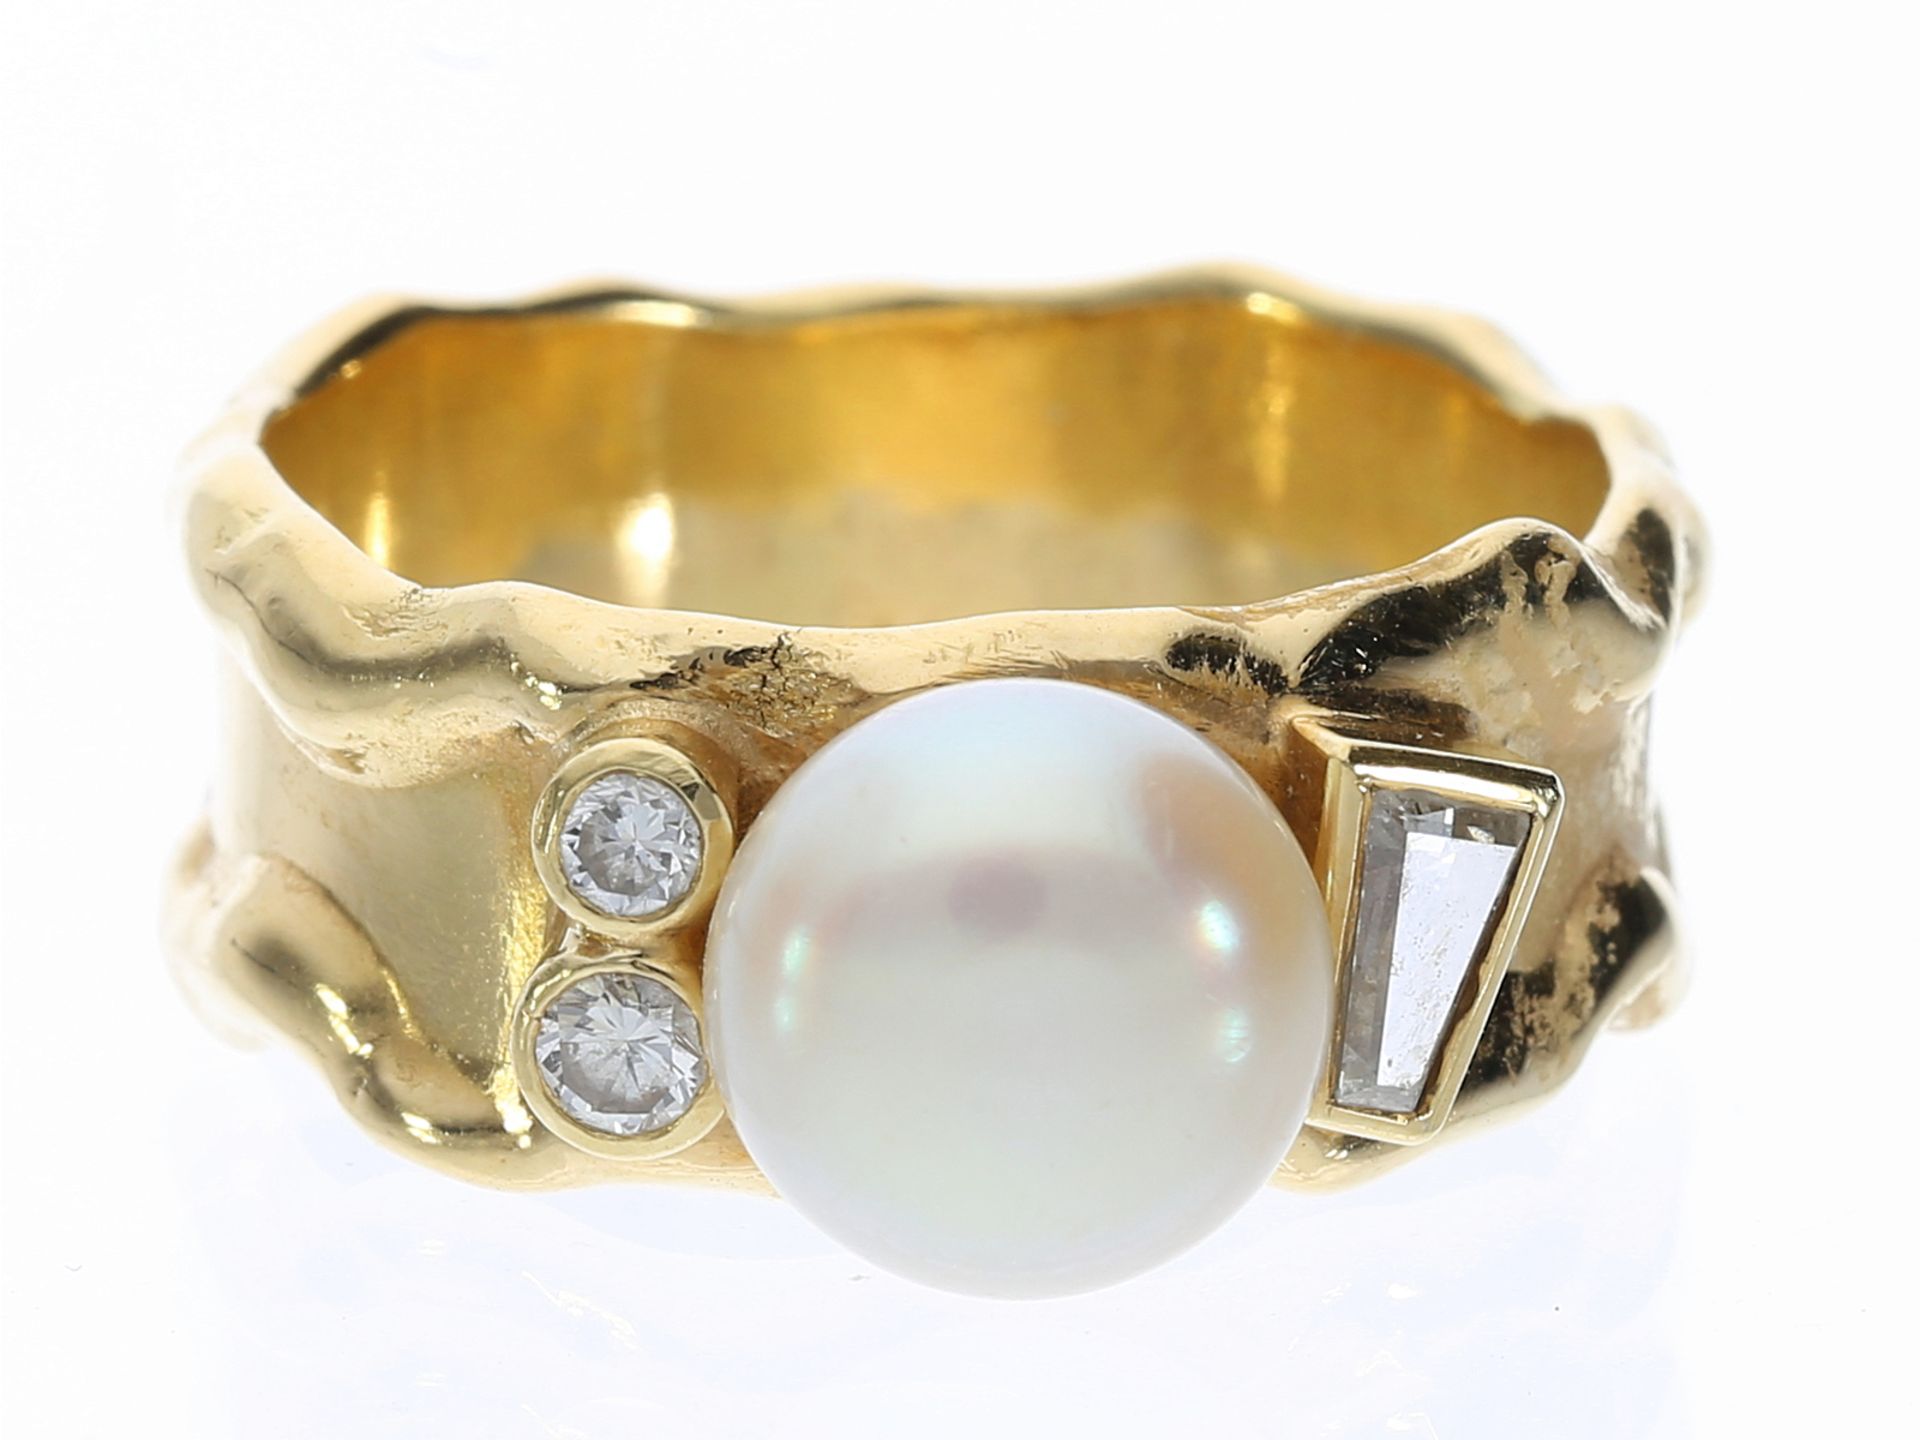 Ring: Designer-Goldschmiedering mit Perle, Diamant- und Brillantbesatz, unikate Handarbeit aus 18K G